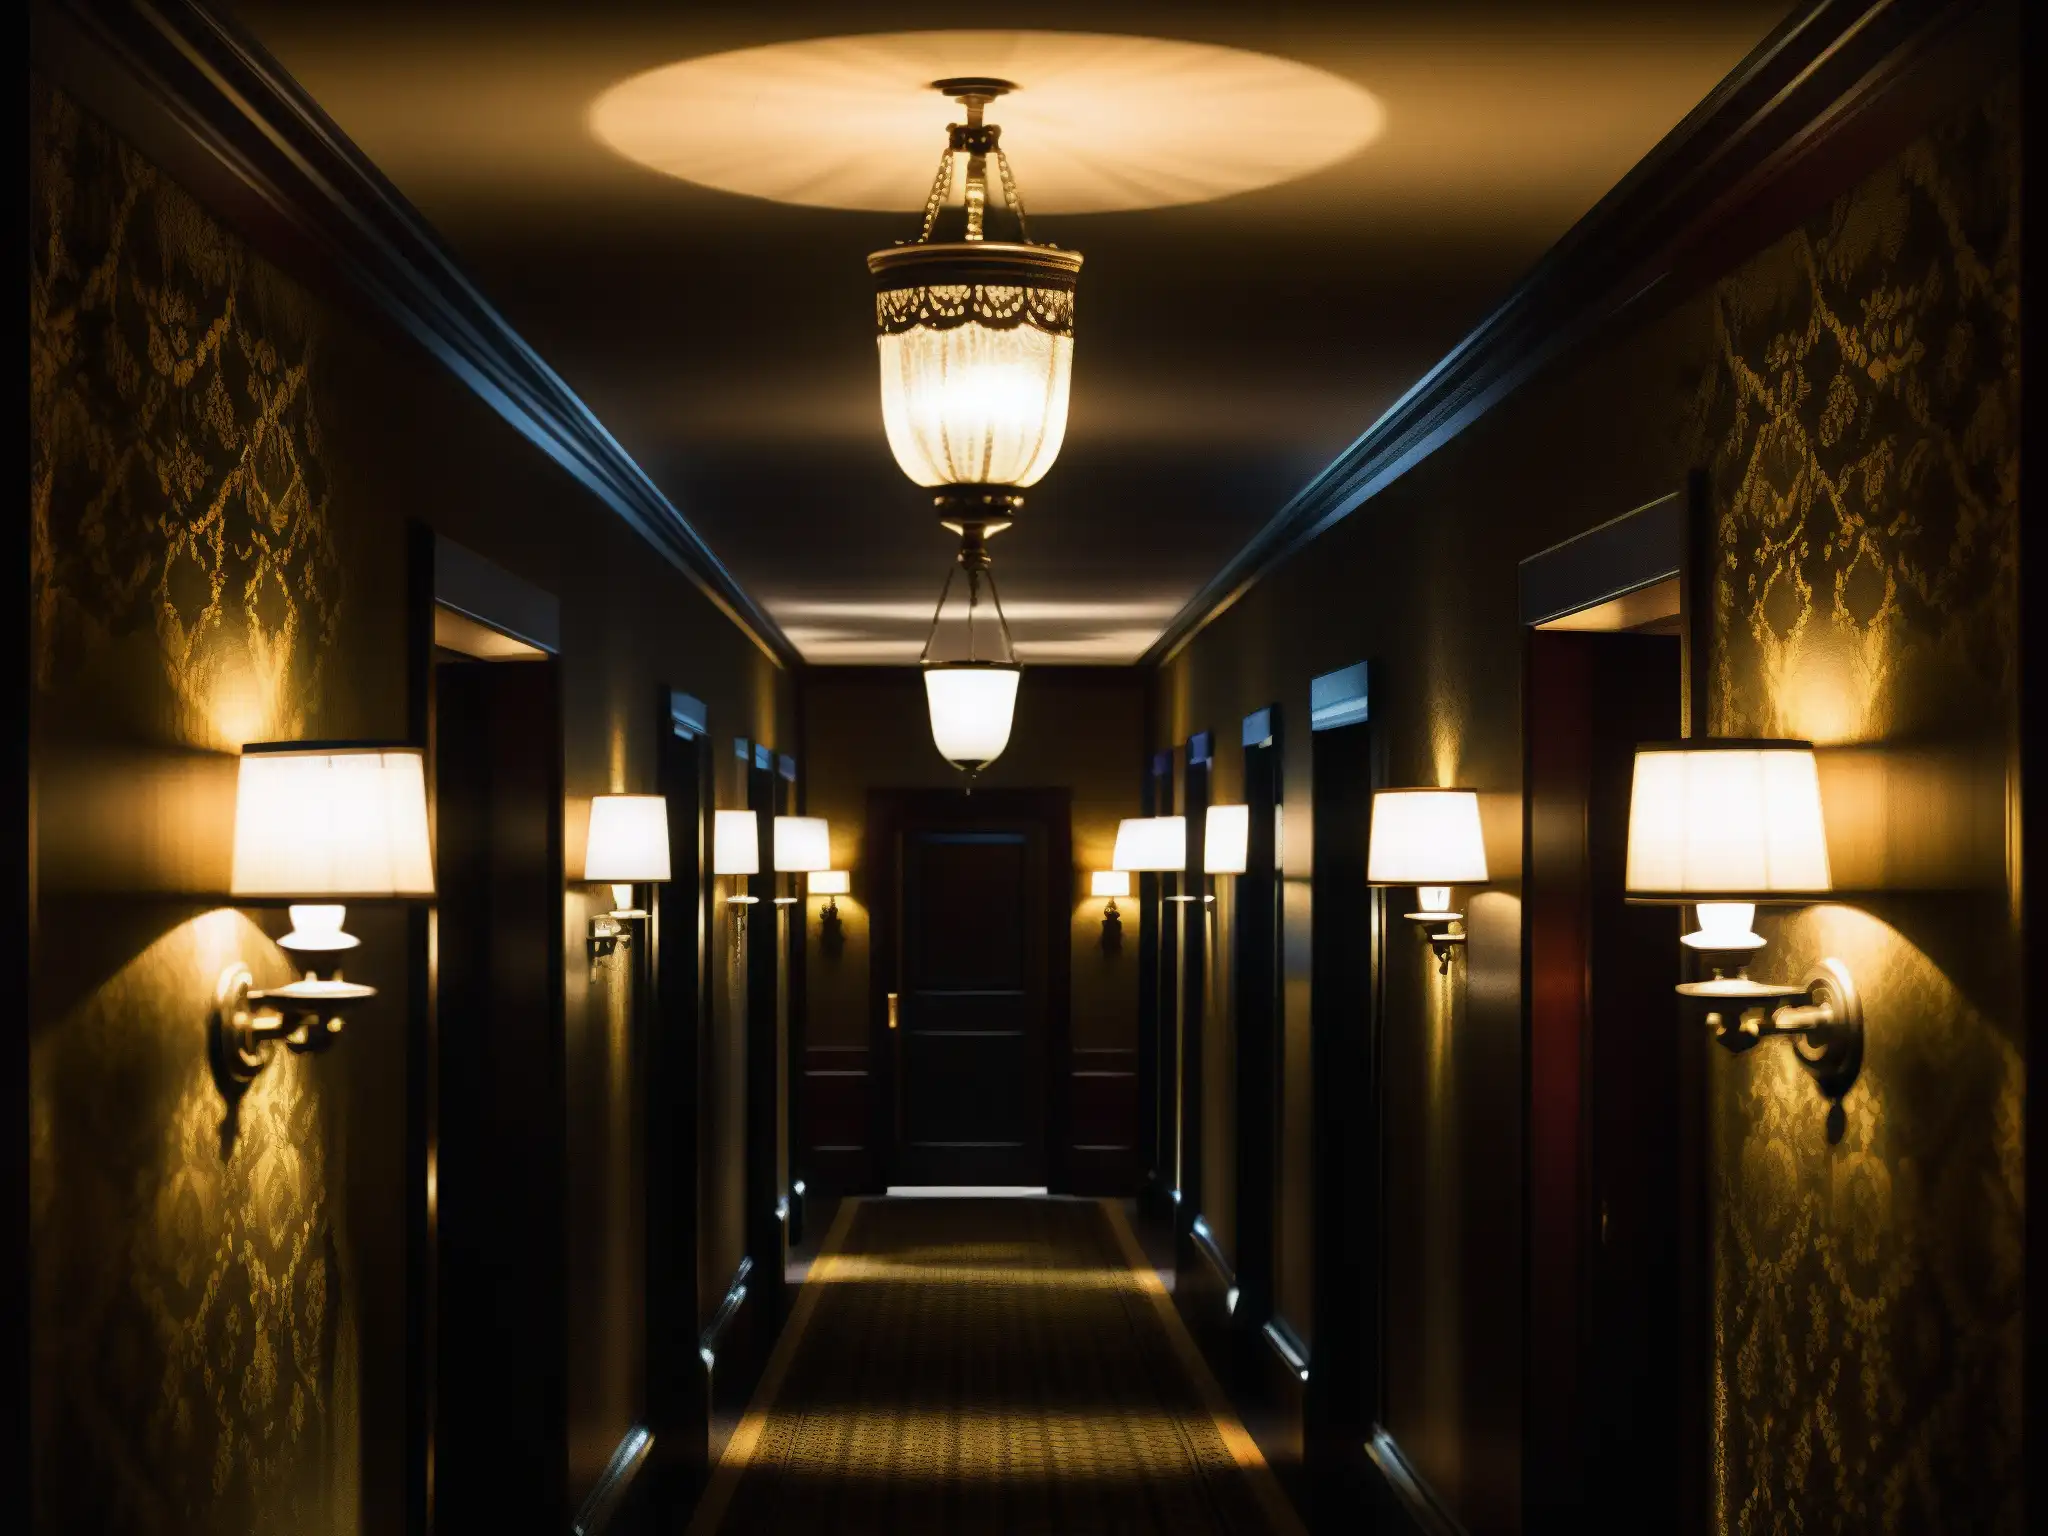 Un pasillo sombrío del histórico Hotel Fairmont Banff Springs, con una presencia escalofriante y detalles vintage en la arquitectura